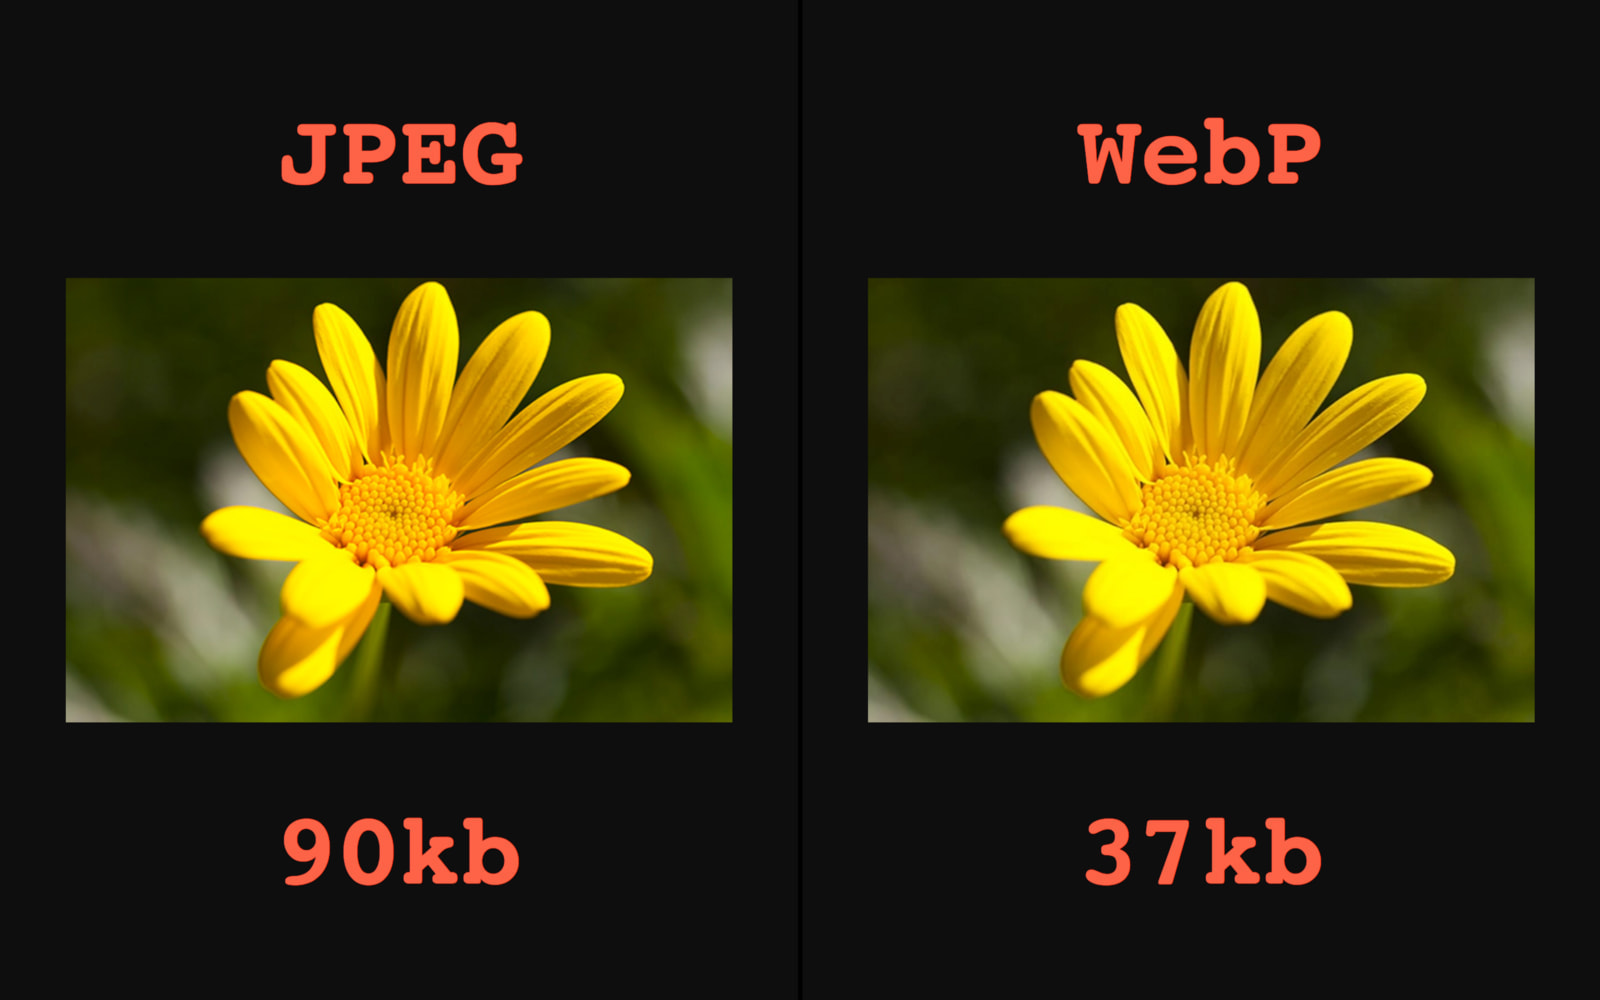 تست تغییر حجم تصاویر با استفاده از افزونه webp